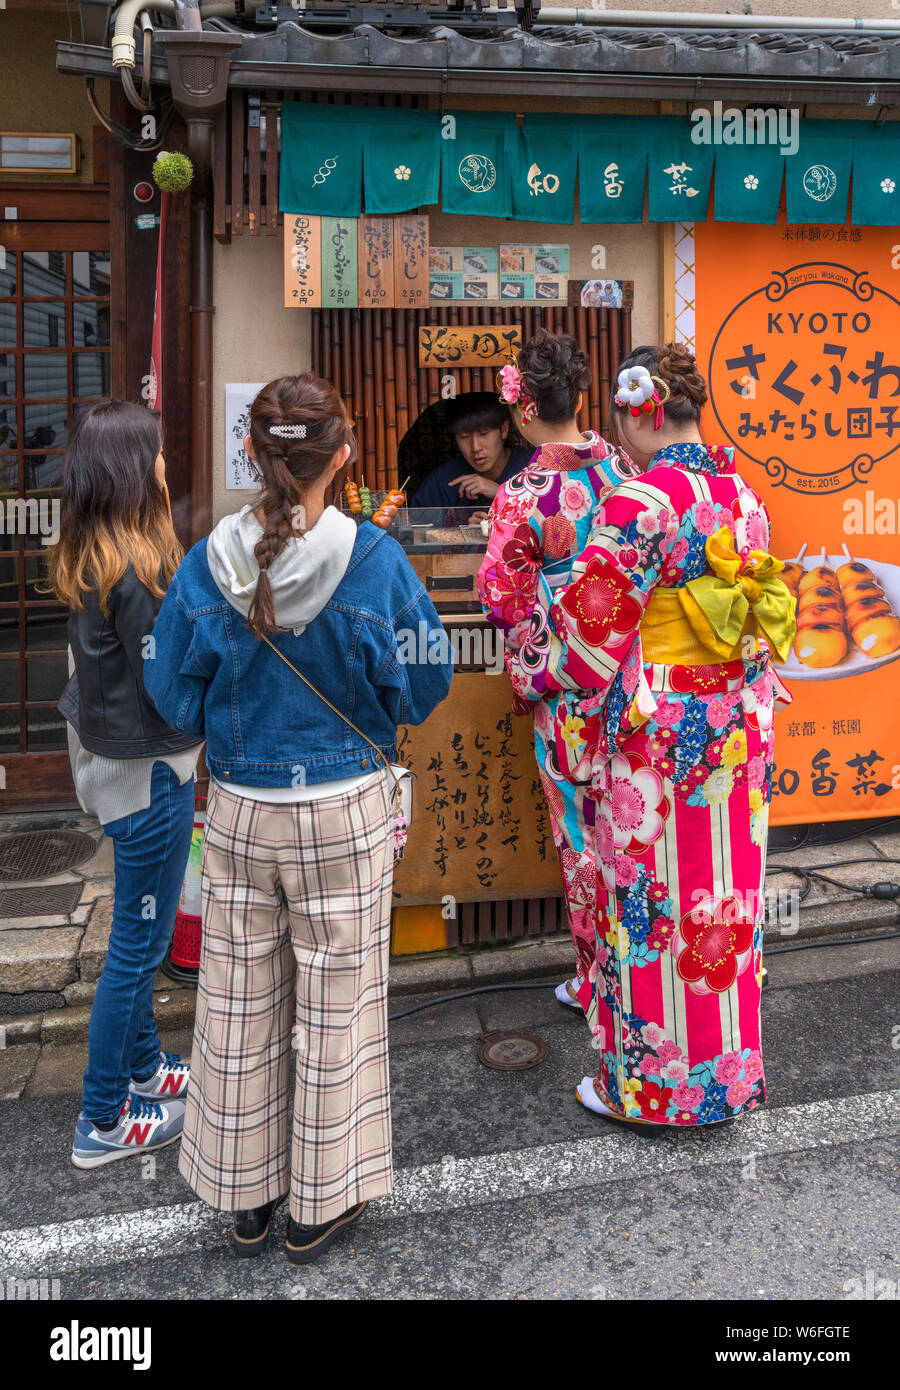 Las mujeres jóvenes vistiendo kimonos tradicionales comprando dumplings de dango calar en el histórico distrito Gion, Kioto, Japón Foto de stock